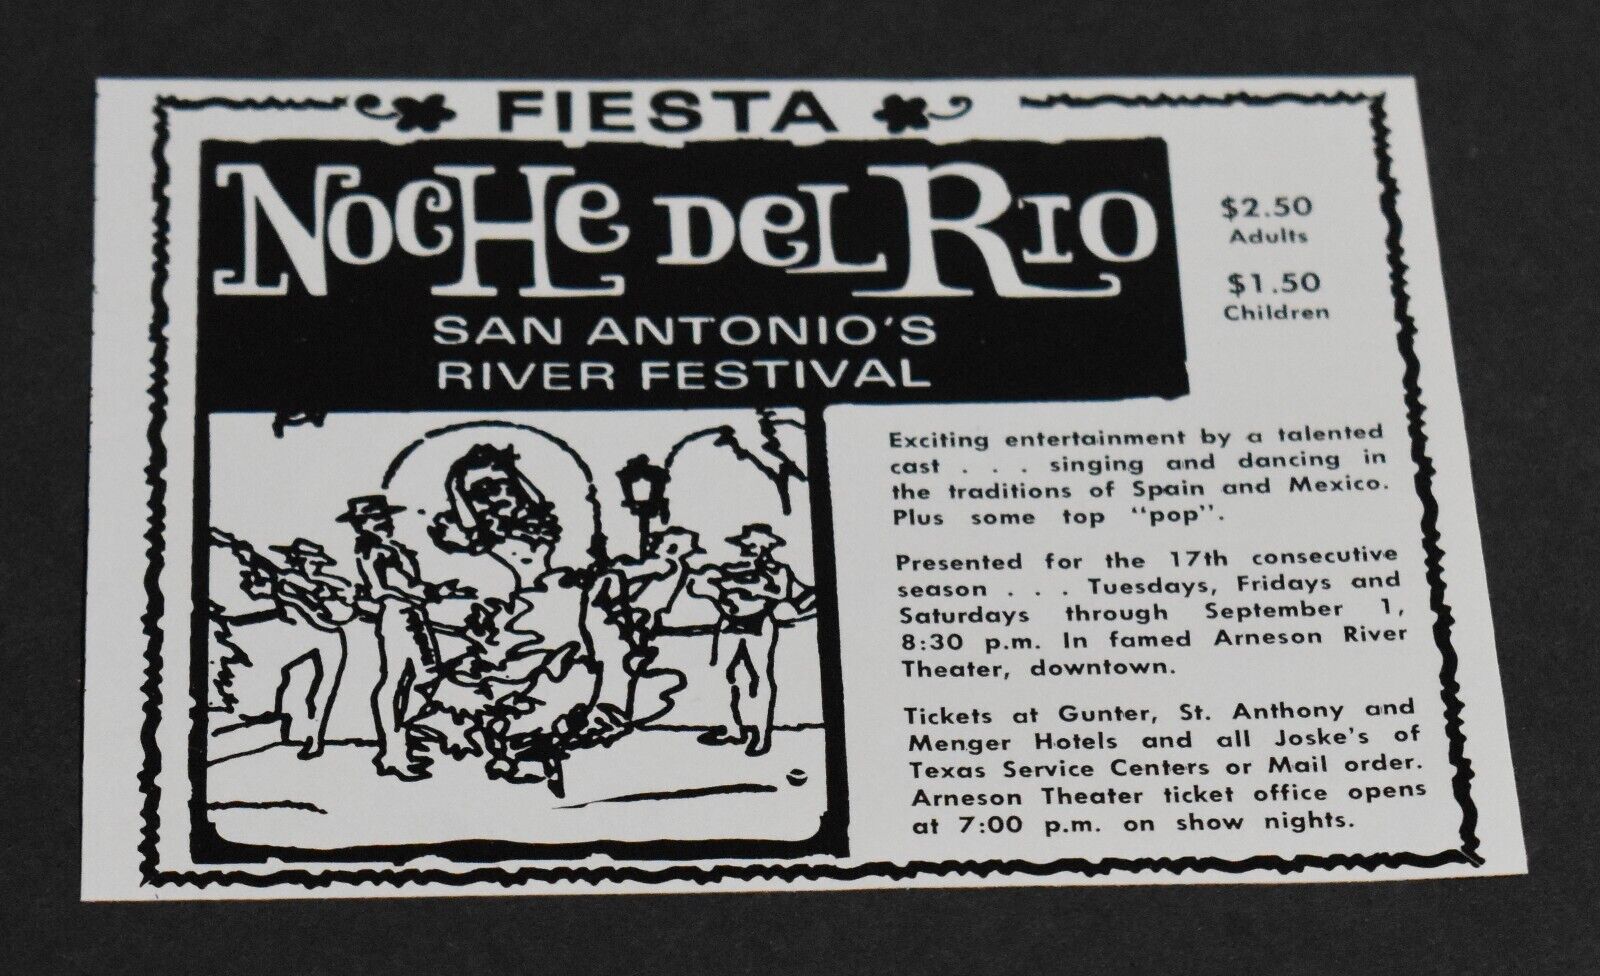 1974 Print Ad Texas San Antonio Noche Del Rio River Festival Fiesta Sing Dance